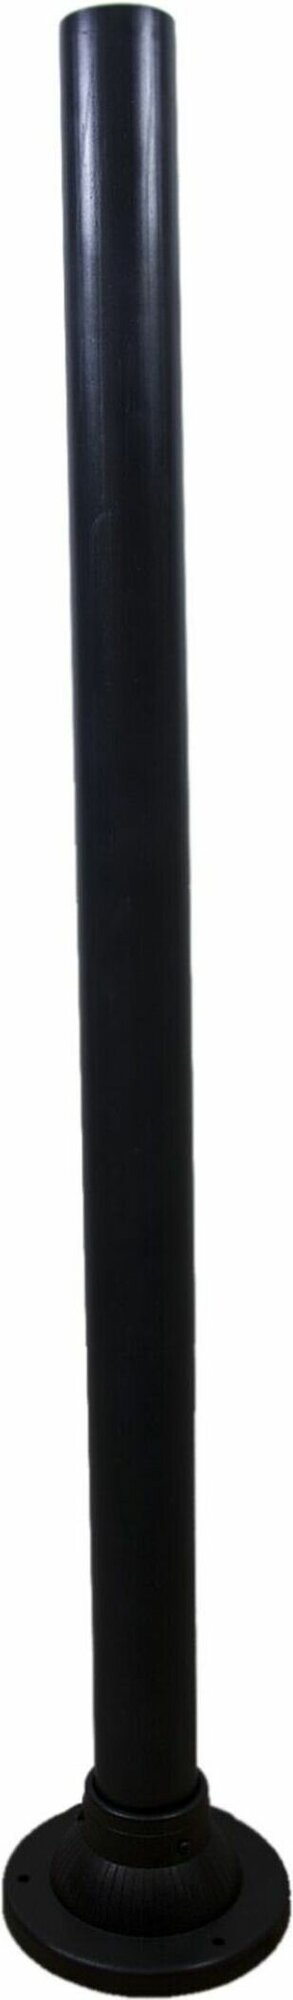 Опора для светильников пластиковая Apeyron Electrics ОП-600ЧЕР 60 см черная